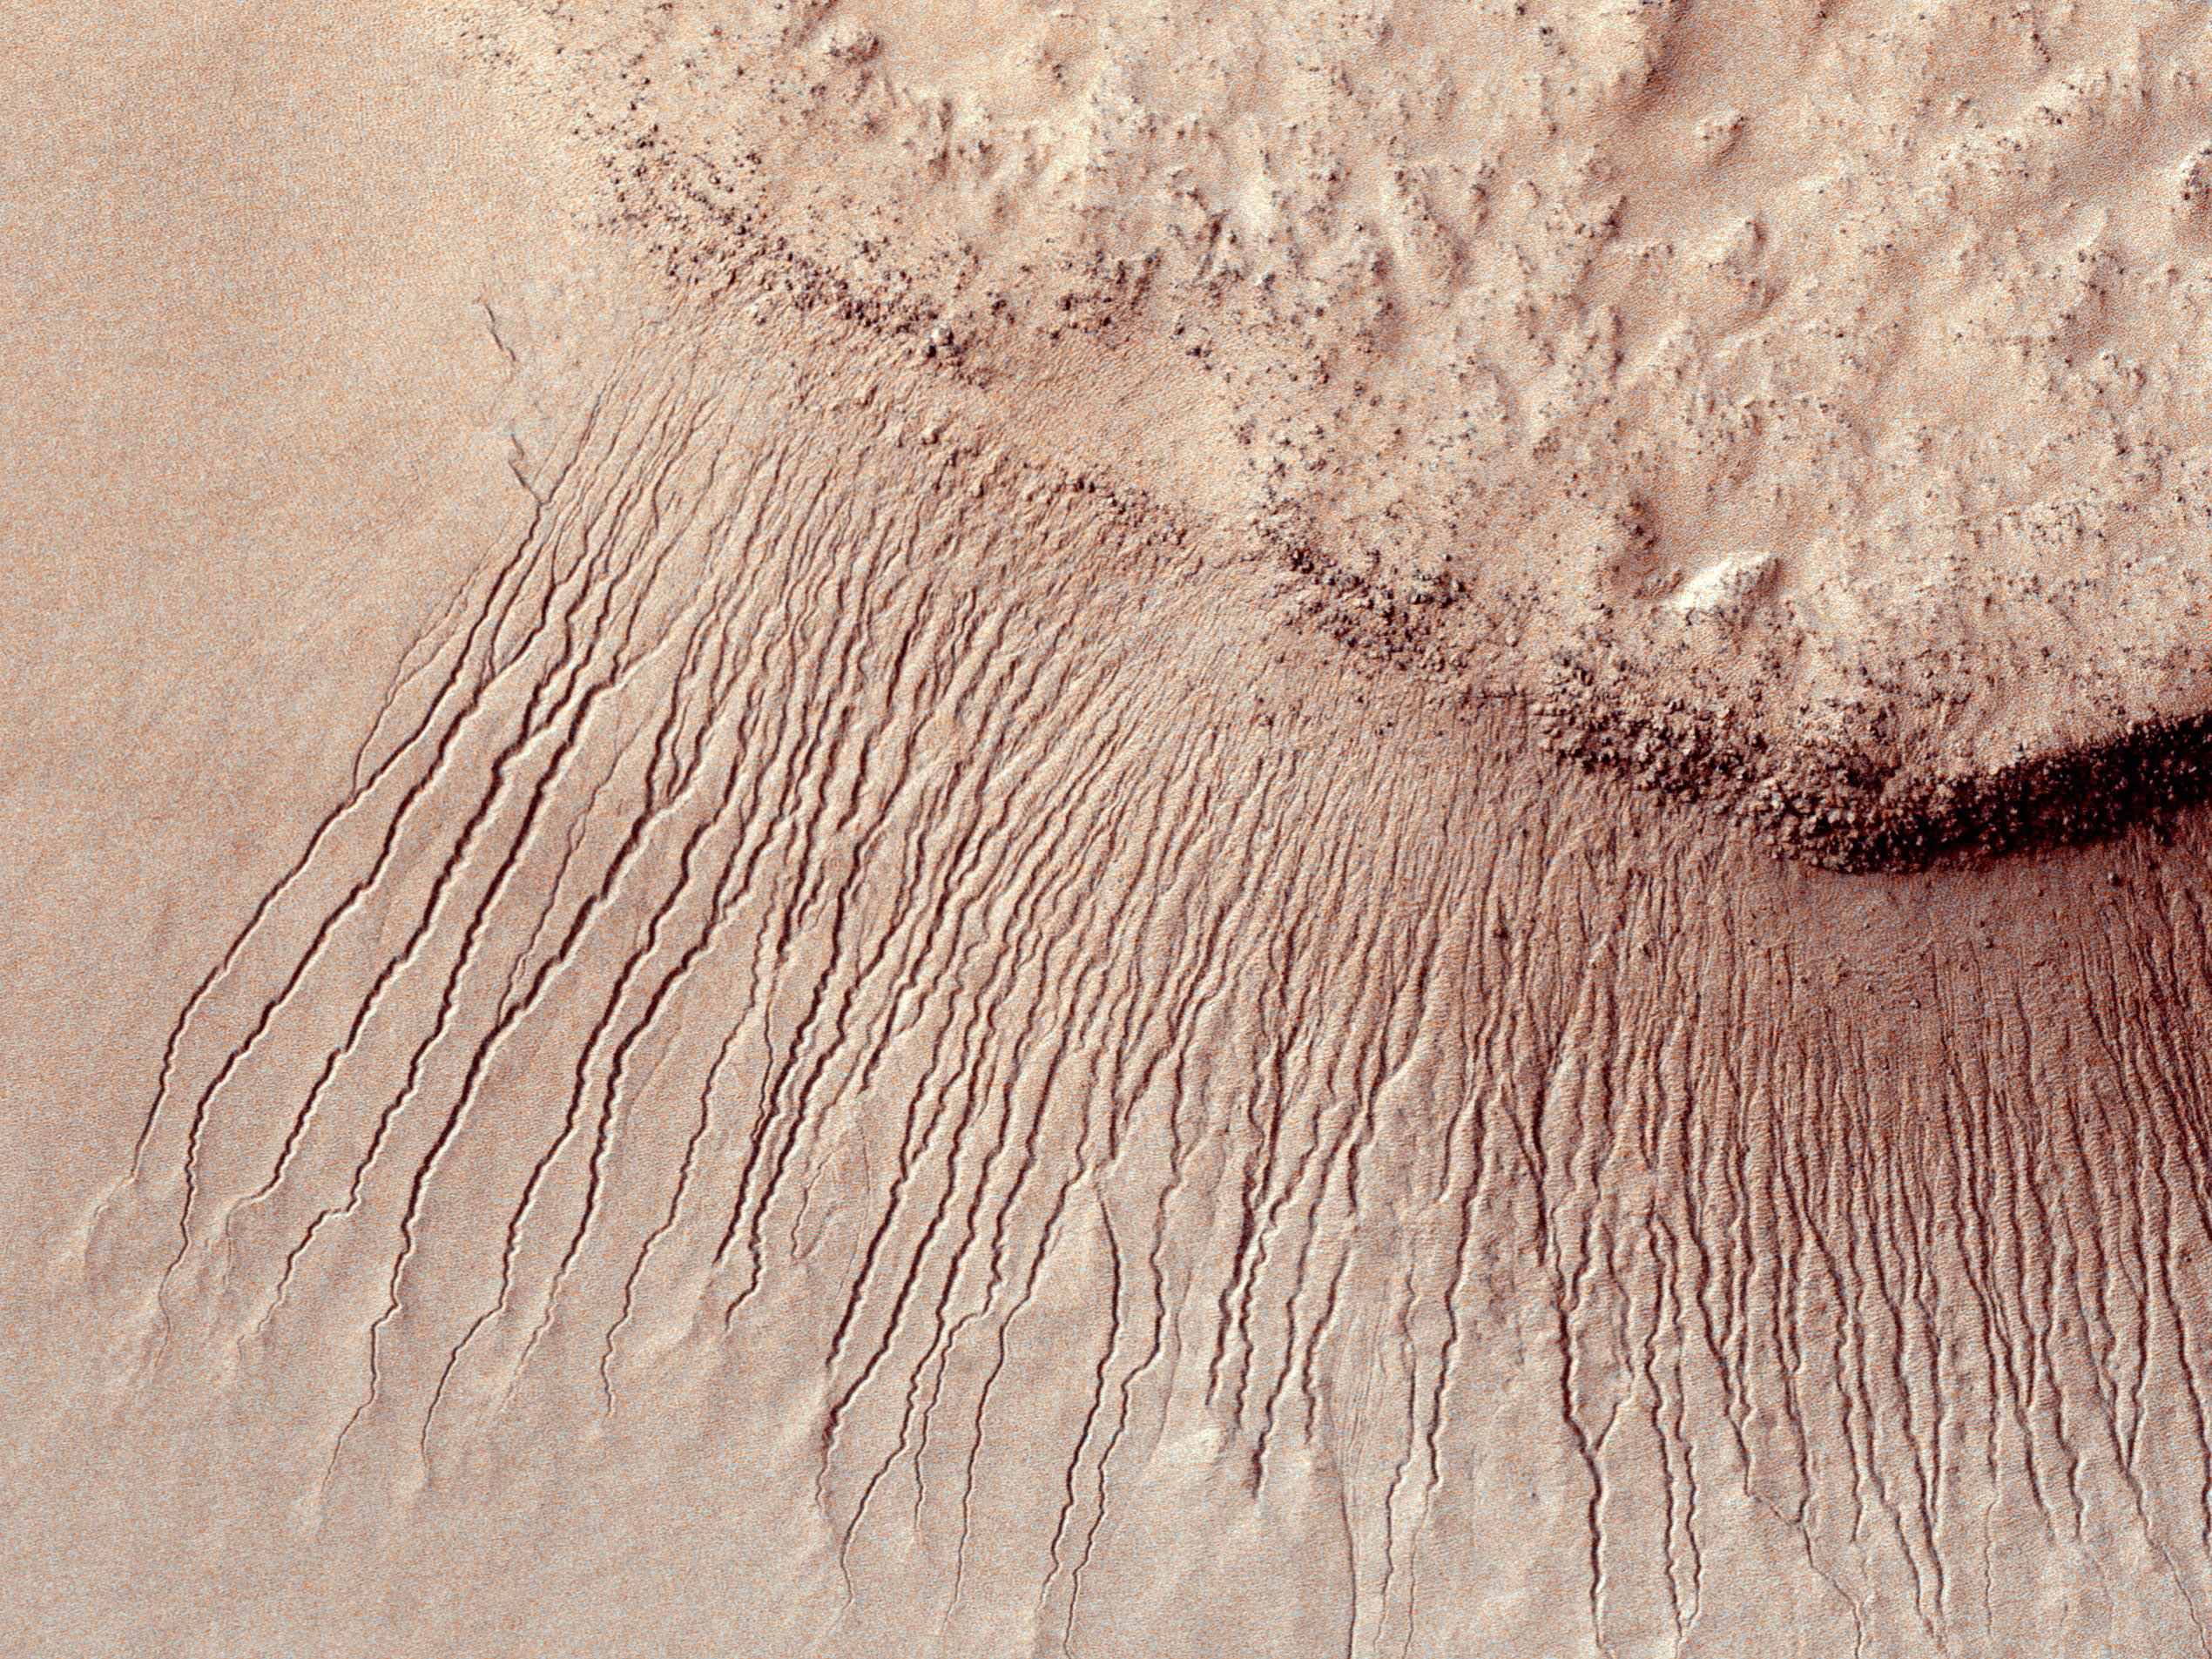 La NASA estudia a profundidad el planeta Marte desde el año 2005.